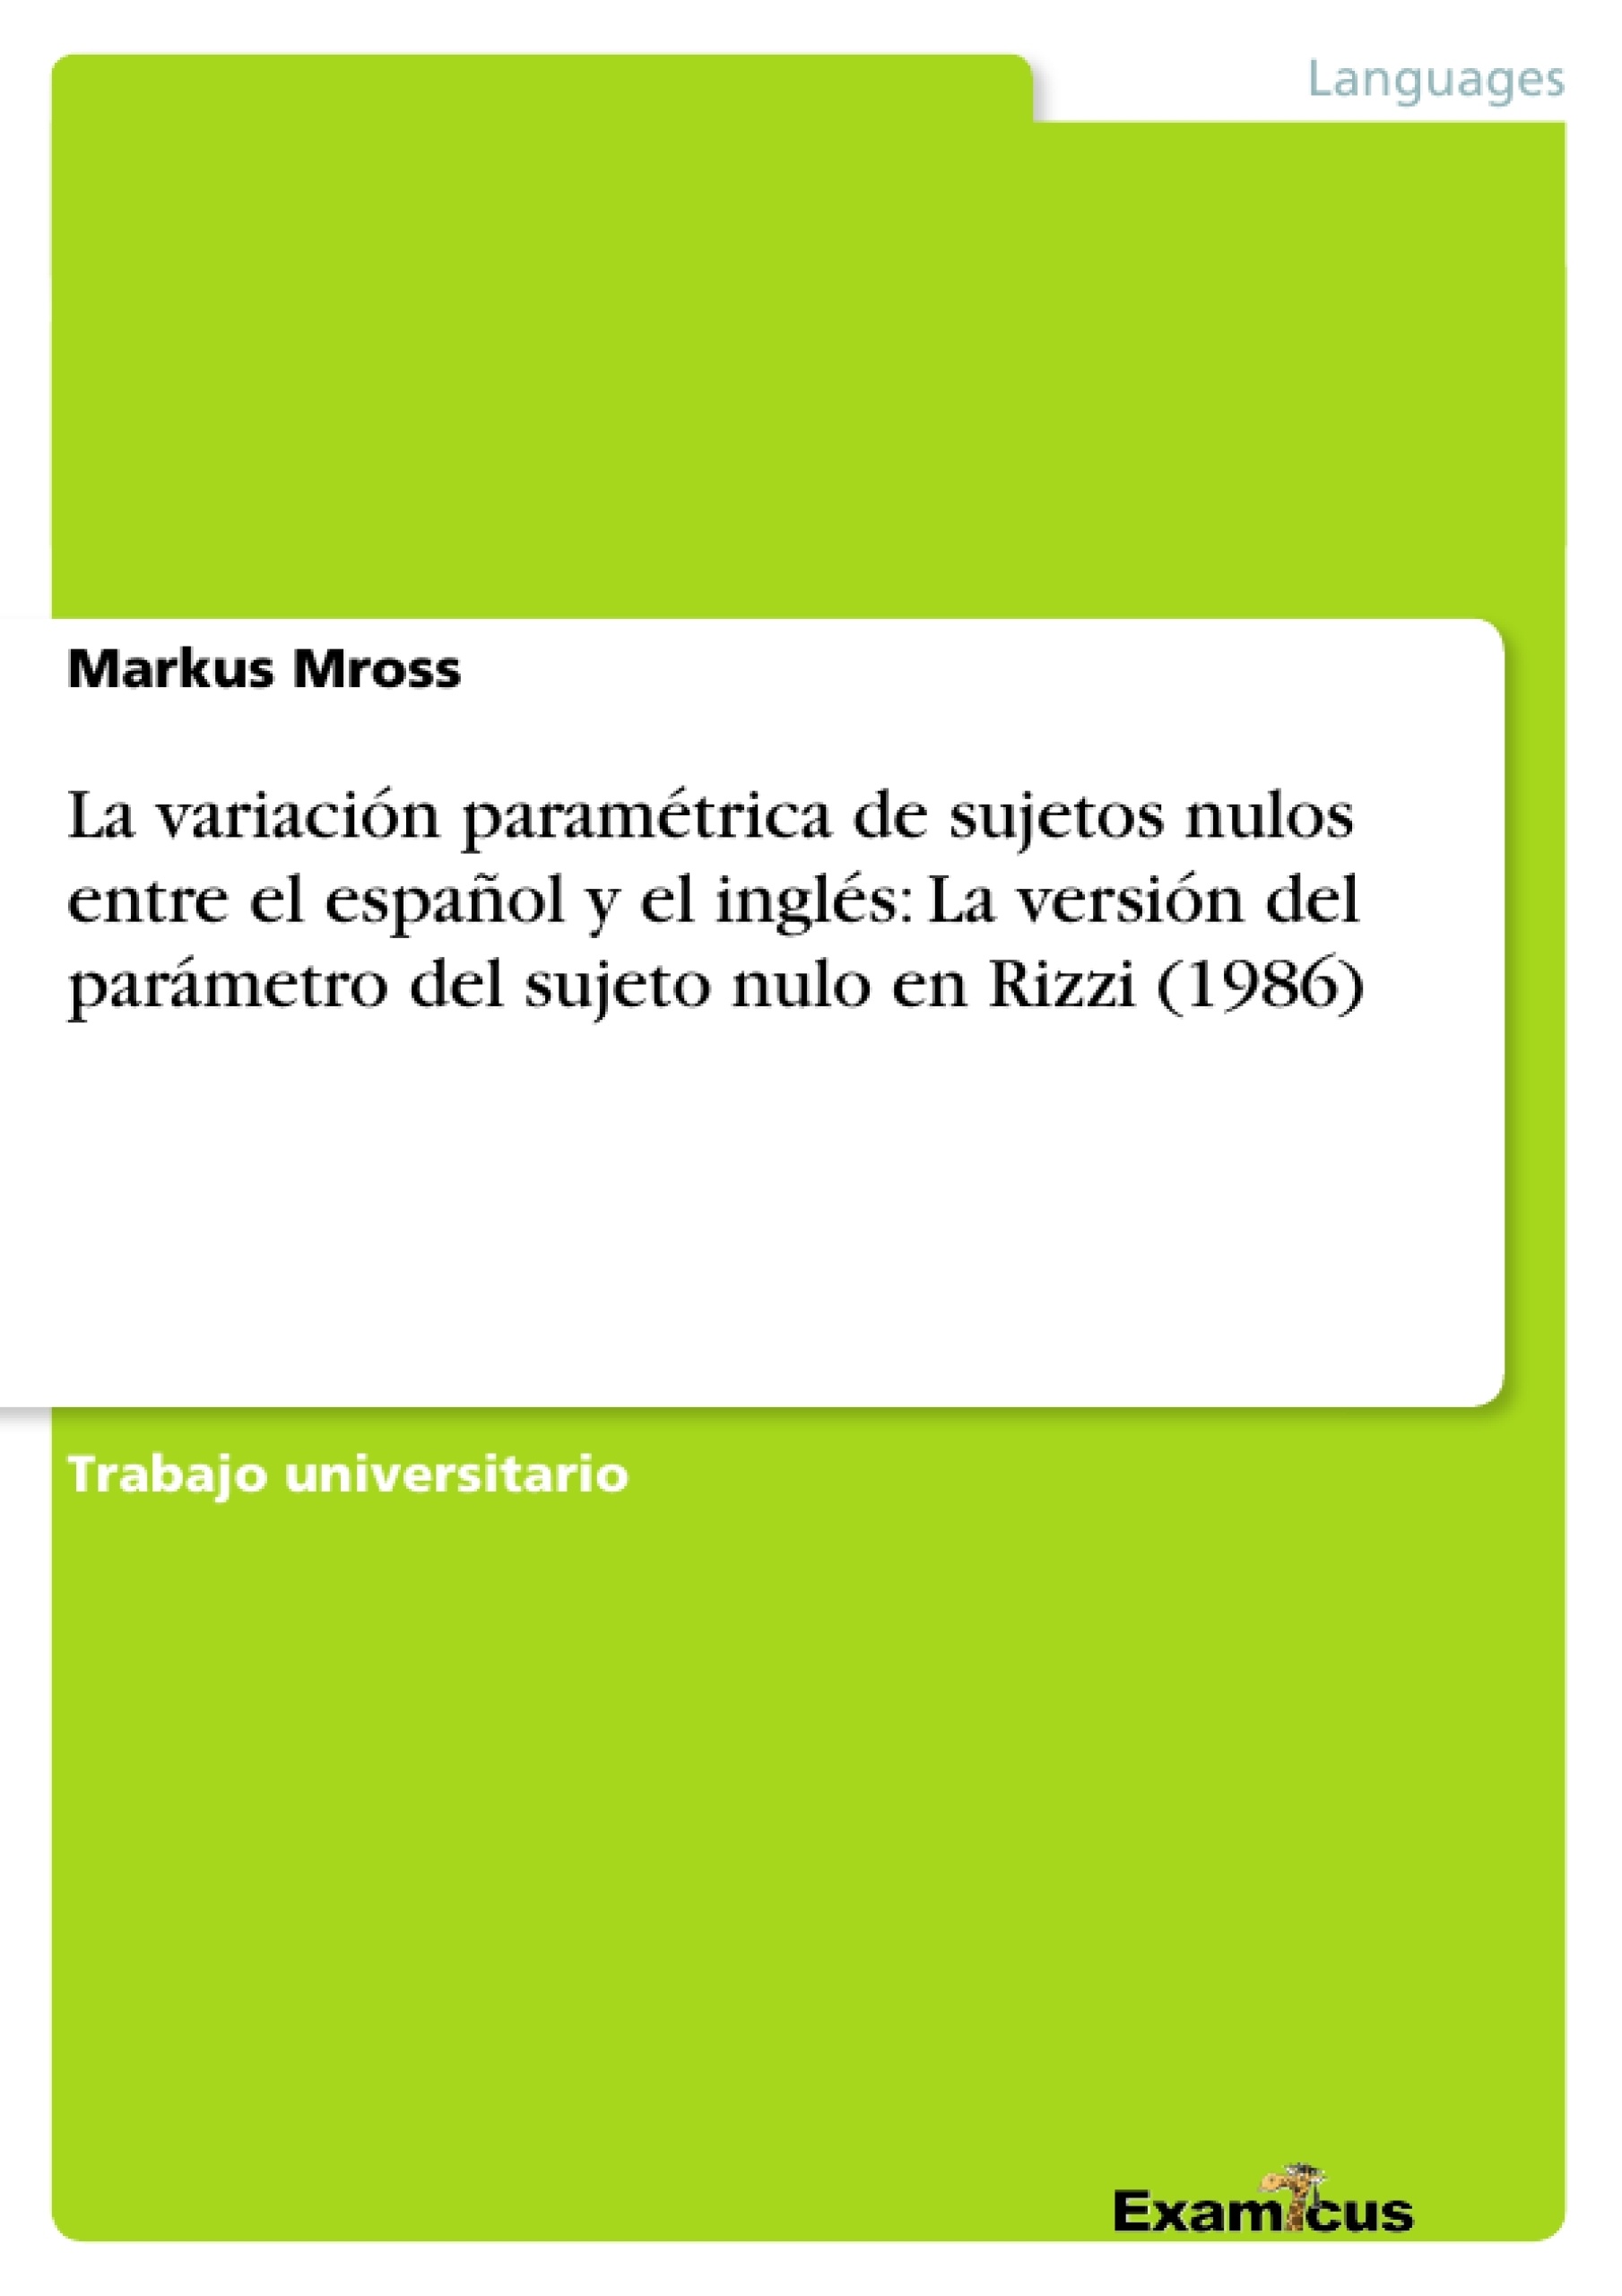 Title: La variación paramétrica de sujetos nulos entre el español y el inglés: La versión del parámetro del sujeto nulo en Rizzi (1986)